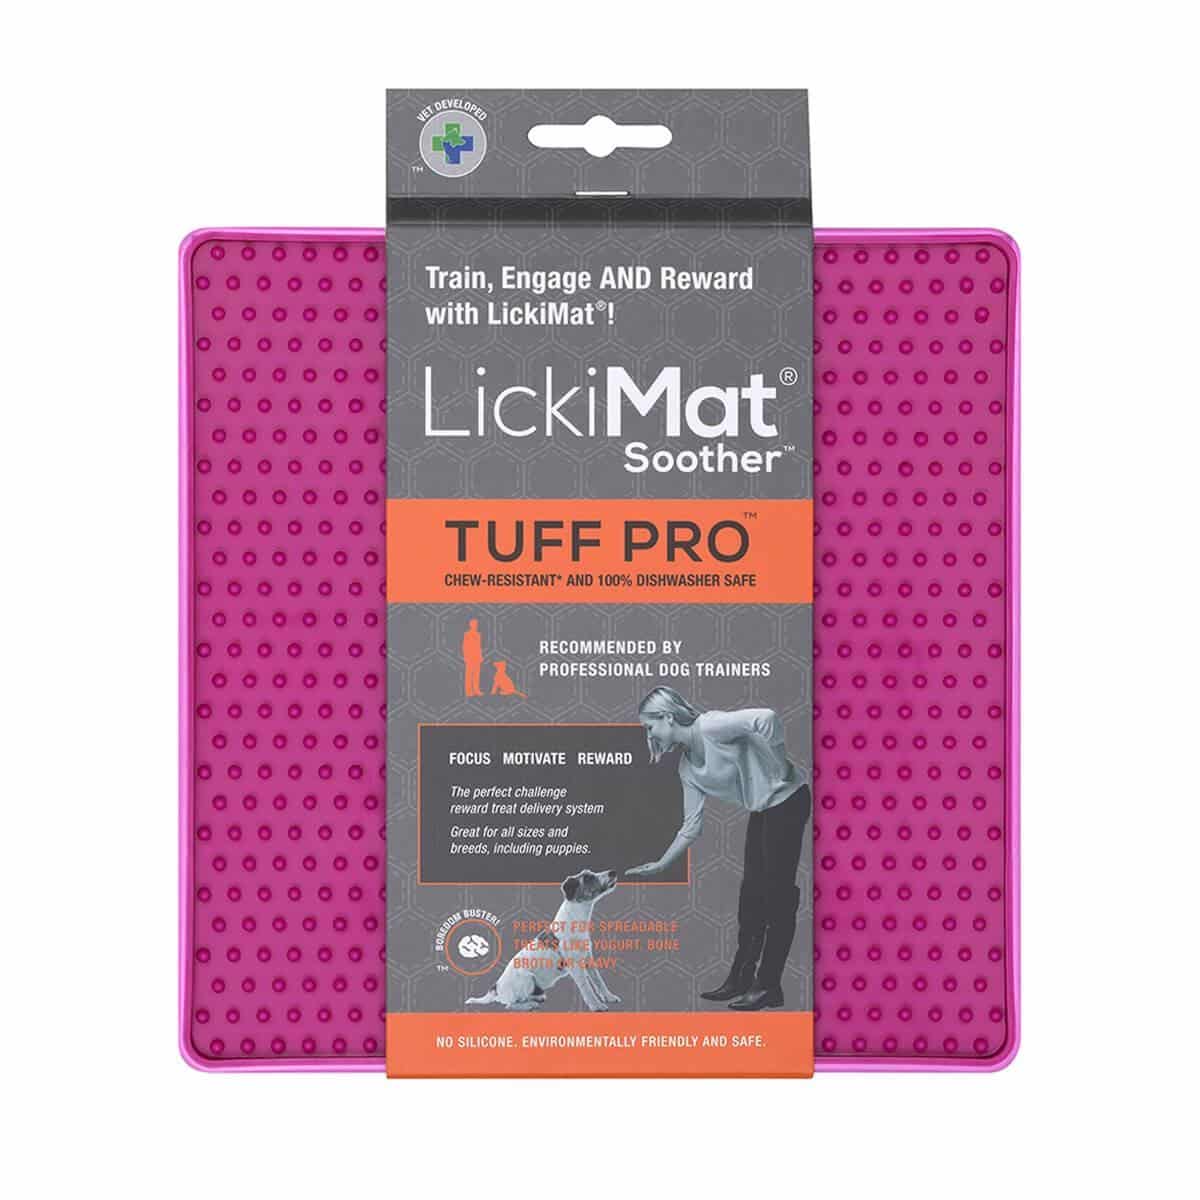 LickiMat Soother Tuff Pro koiran aktivointimatto myyntipakkaus, pinkki.